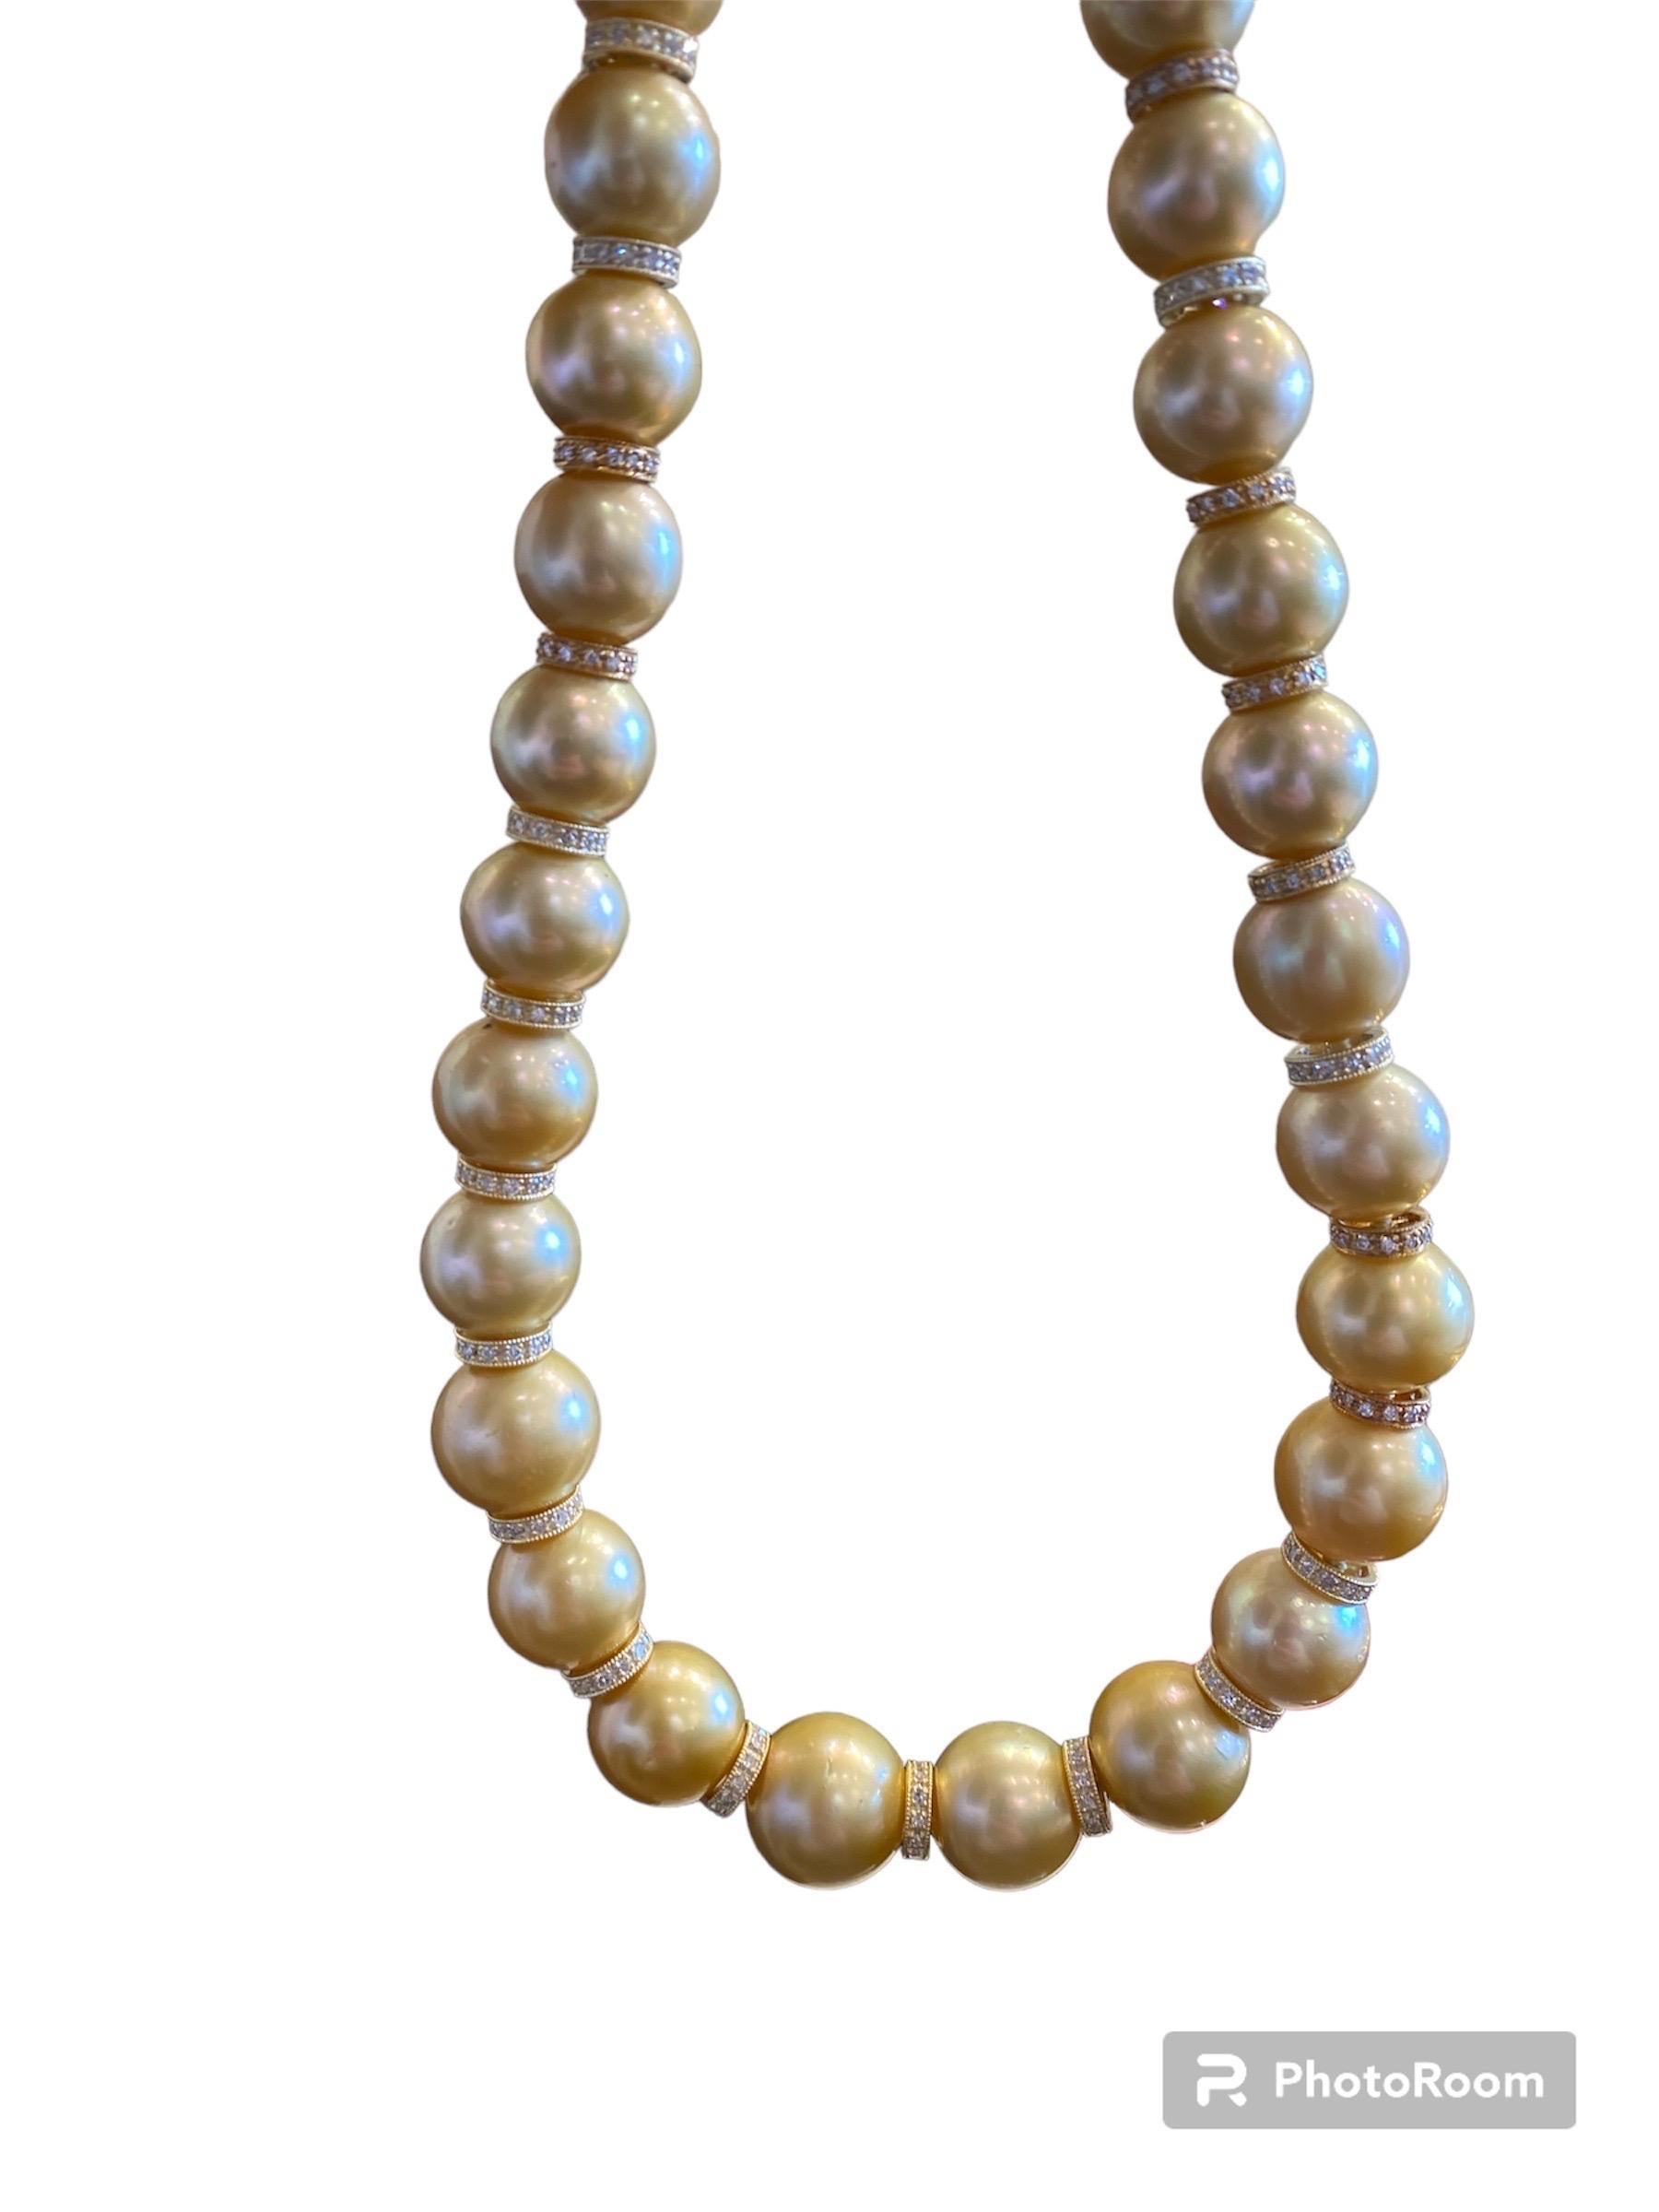 Dieser exquisite Strang aus halbbarocken, rundlichen, goldenen Südseeperlen ist absolut umwerfend! Enthalten sind wunderschöne Perlen mit einem Durchmesser von 13,00 mm bis 15,00 mm, die alle einen hervorragenden Glanz haben. Sie wurden von Hand auf